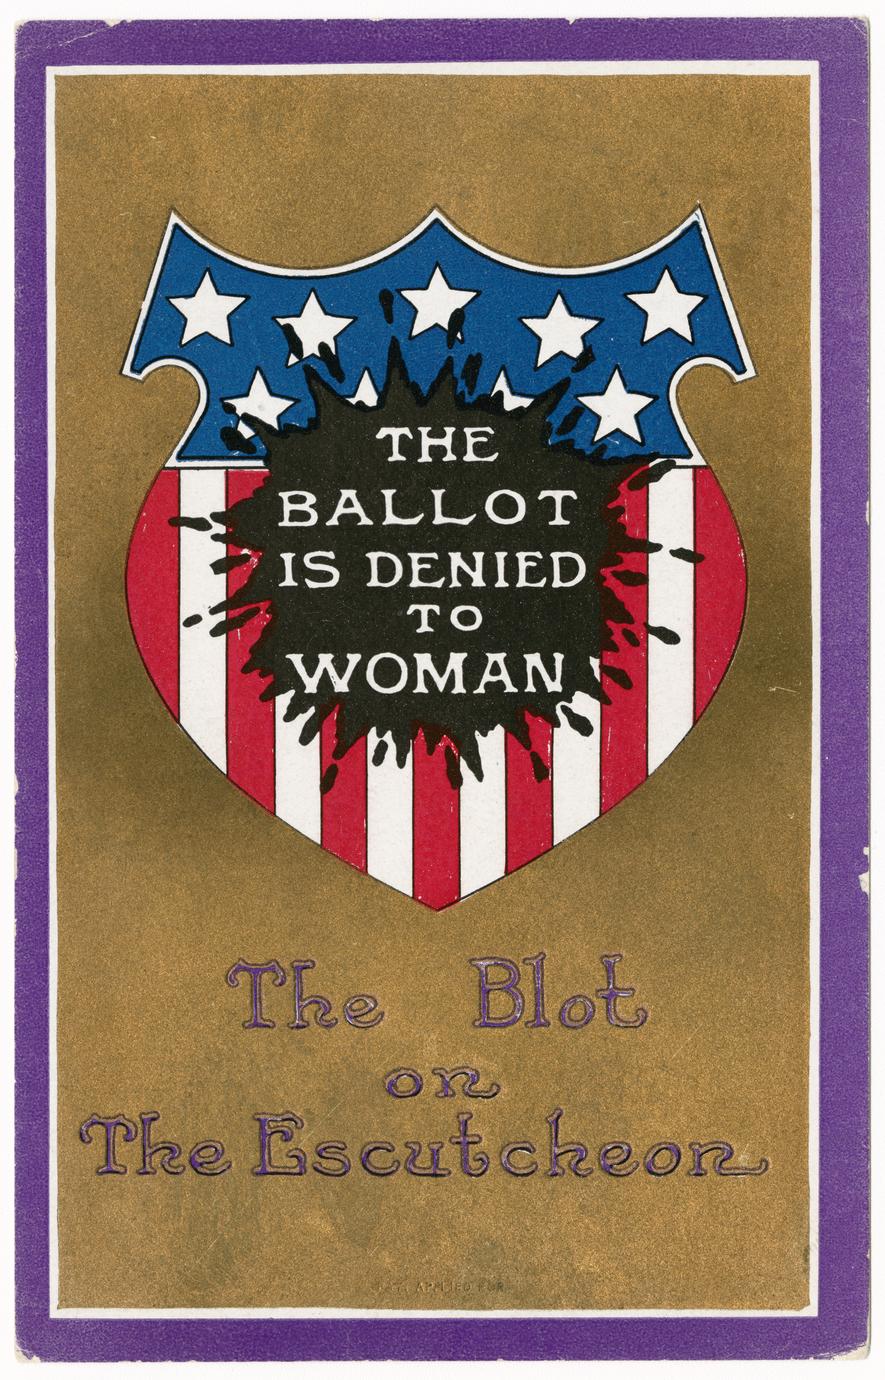 Blot on the escutcheon, suffrage postcard